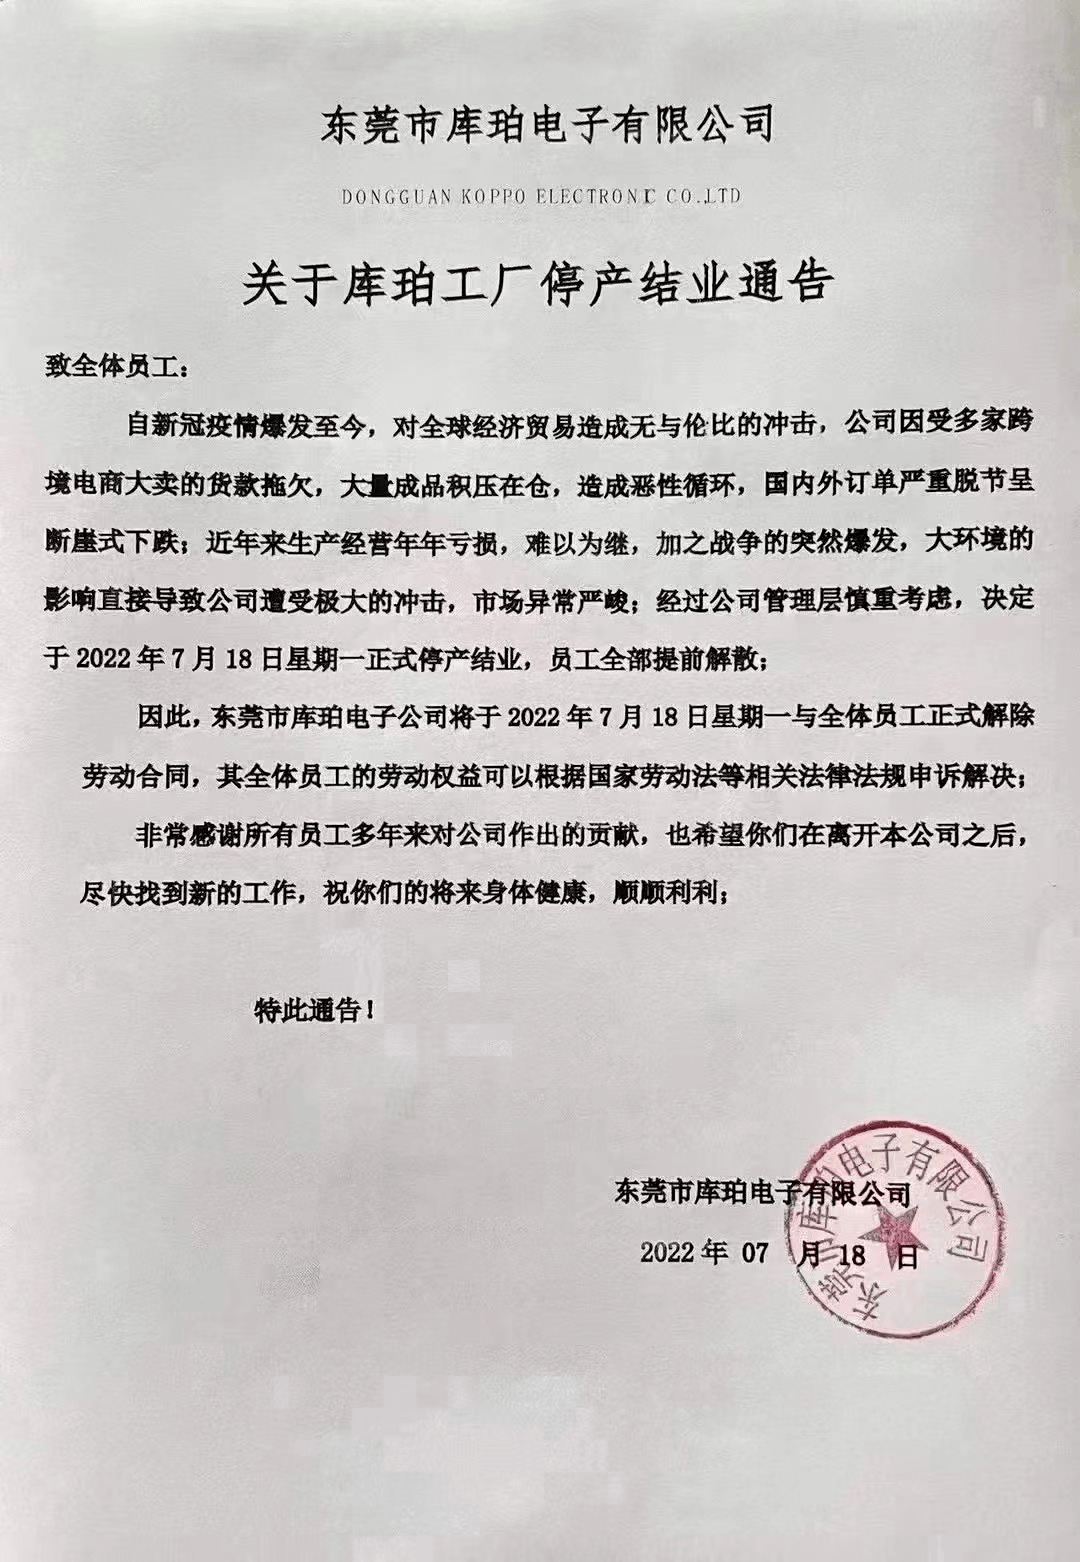 深圳一20年老牌电子企业宣布停工停产!